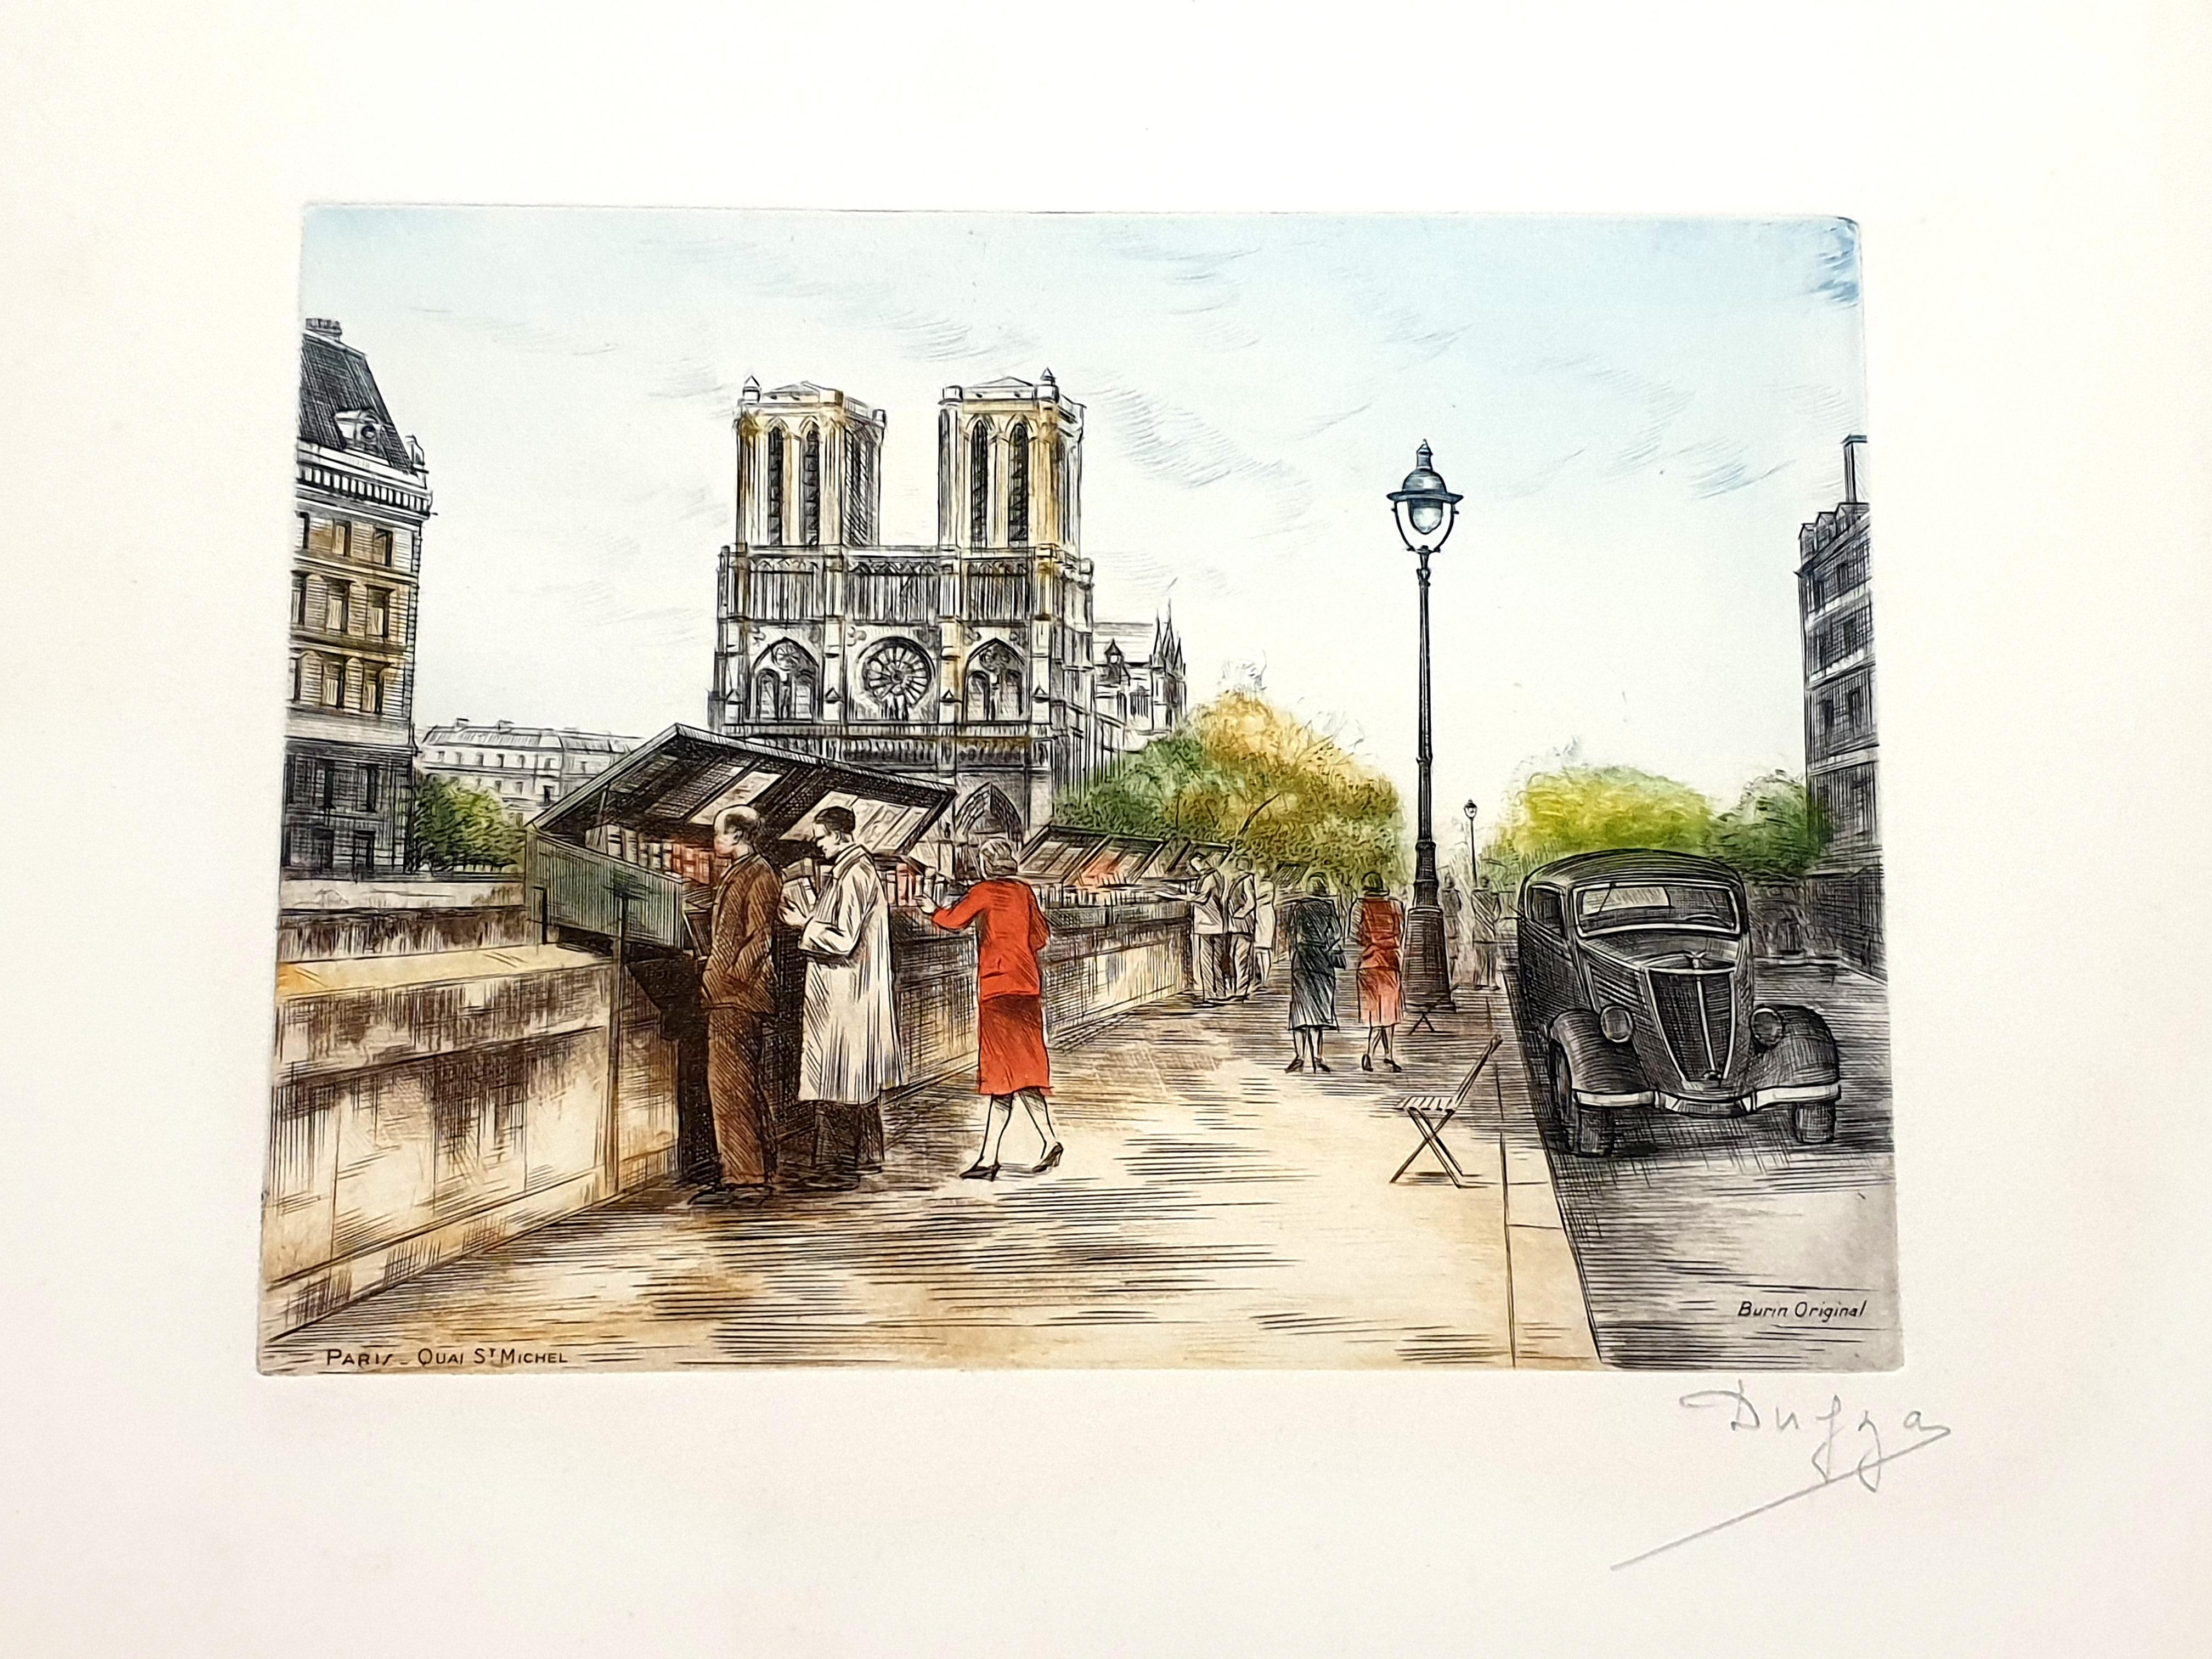 Dufza - Paris - Saint Michel - Gravure originale signée de sa main
Circa 1940
Signé à la main au crayon
Dimensions : 20 x 25 cm 
Non numéroté au moment de l'émission 